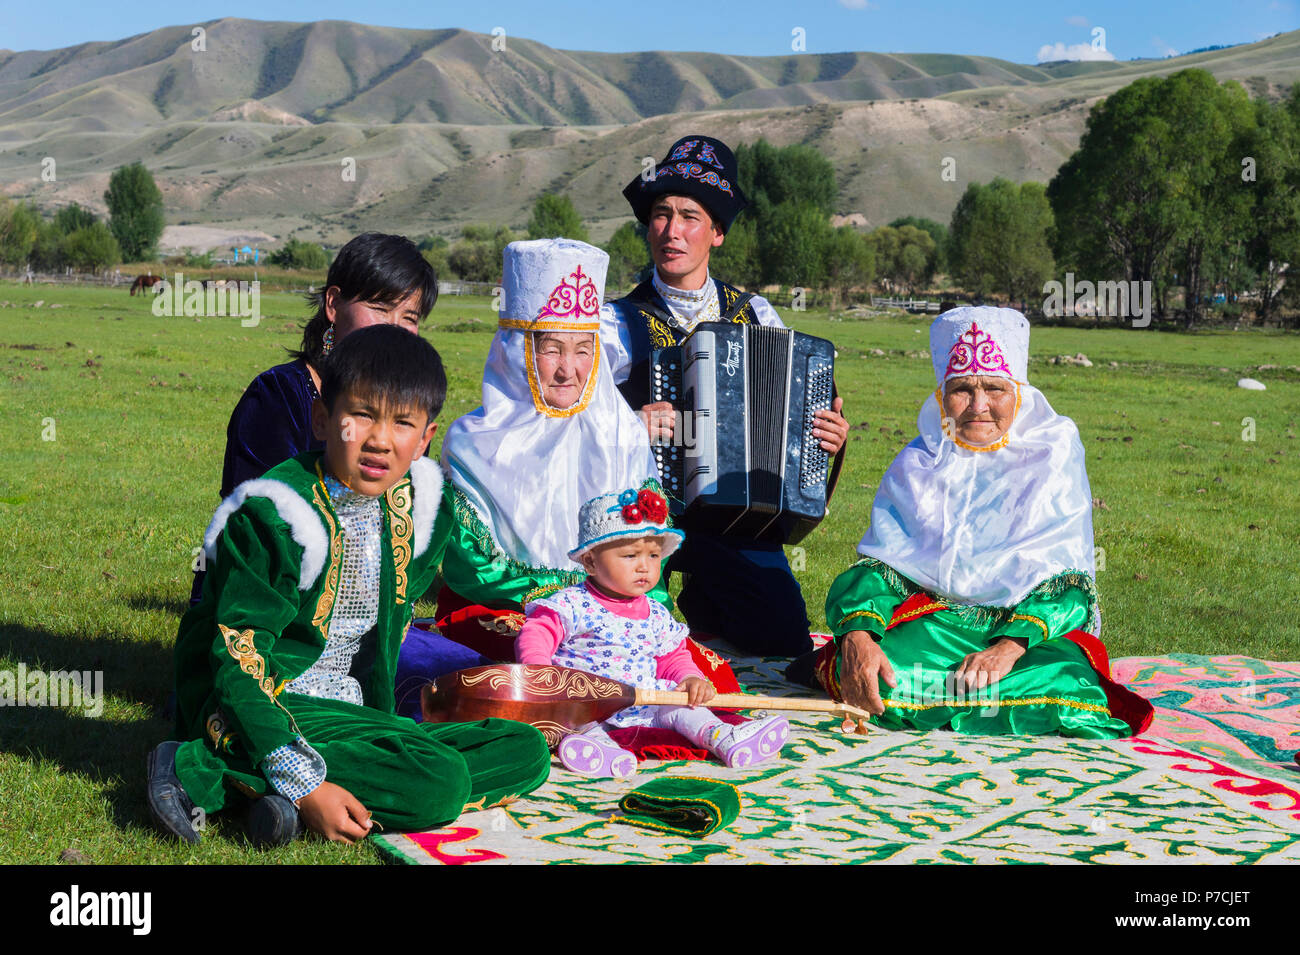 Kasachische Familie in traditioneller Kleidung, Zuhören, Akkordeon spieler, für redaktionelle nur, Sati Dorf, Tien Shan Gebirge, Kasachstan verwenden Stockfoto